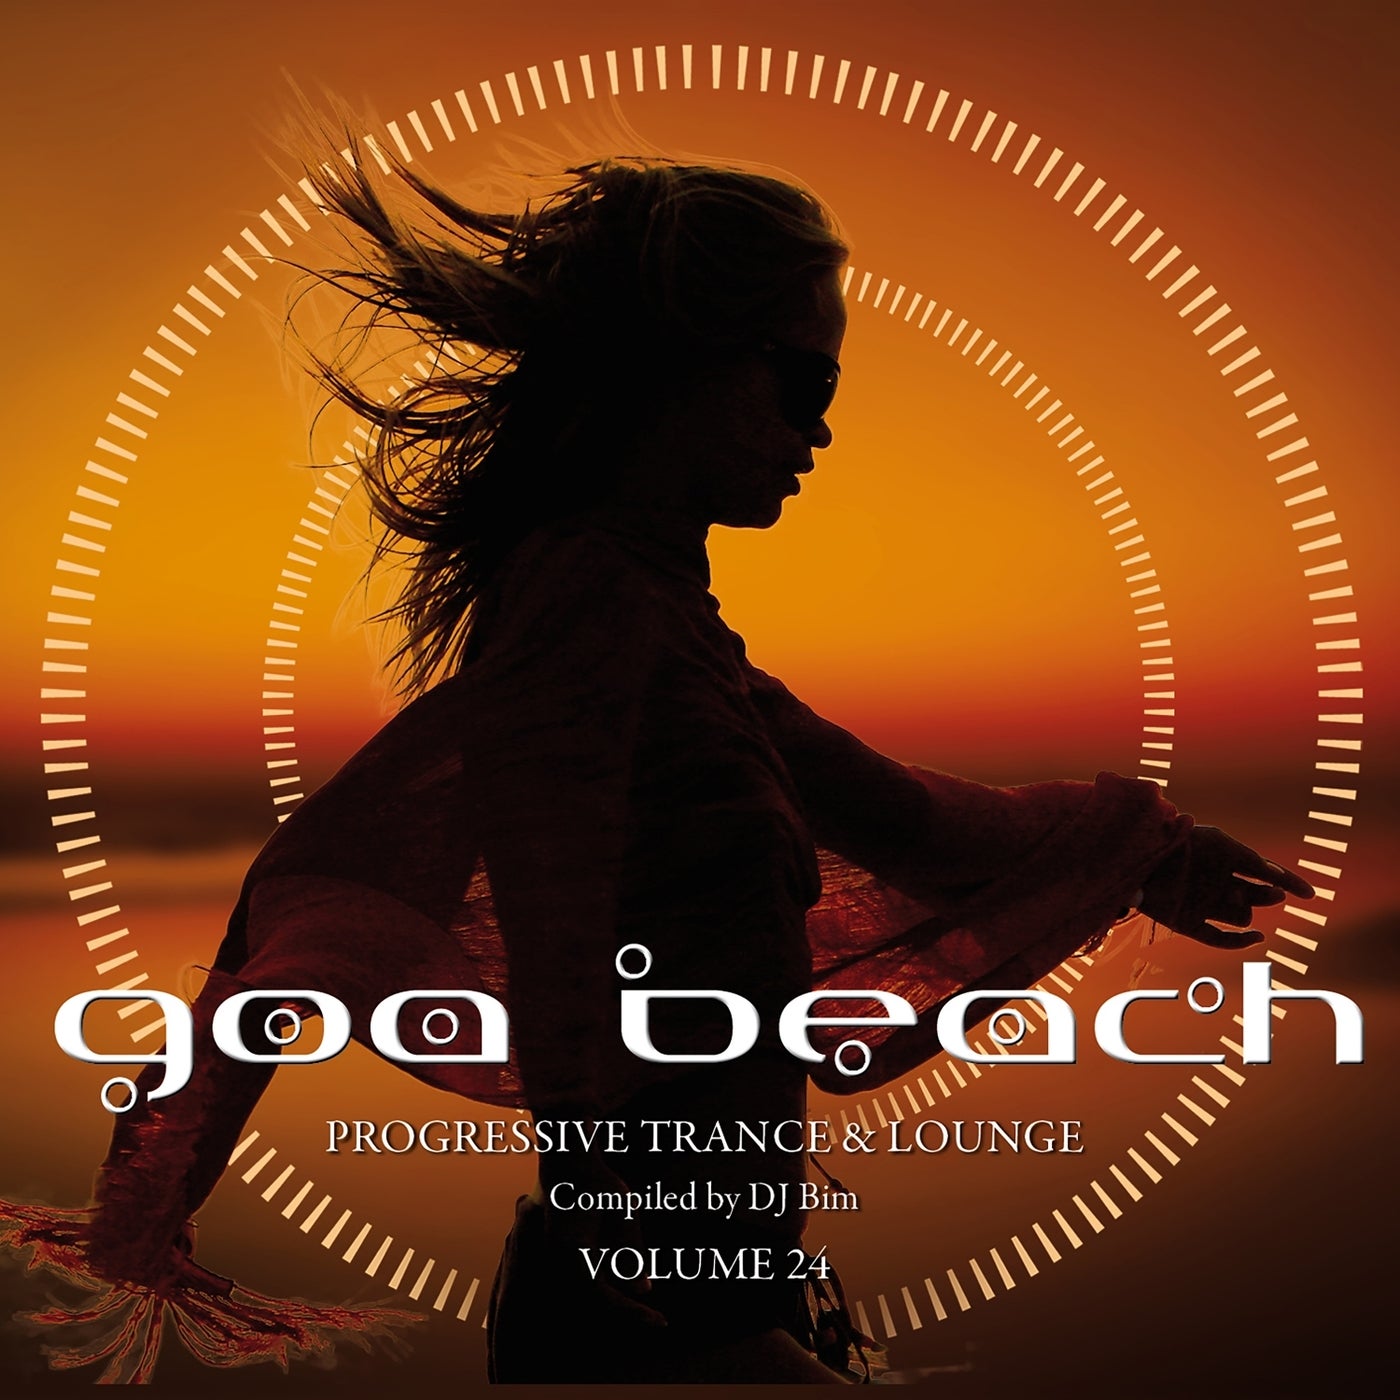 Goa Beach, Vol. 24